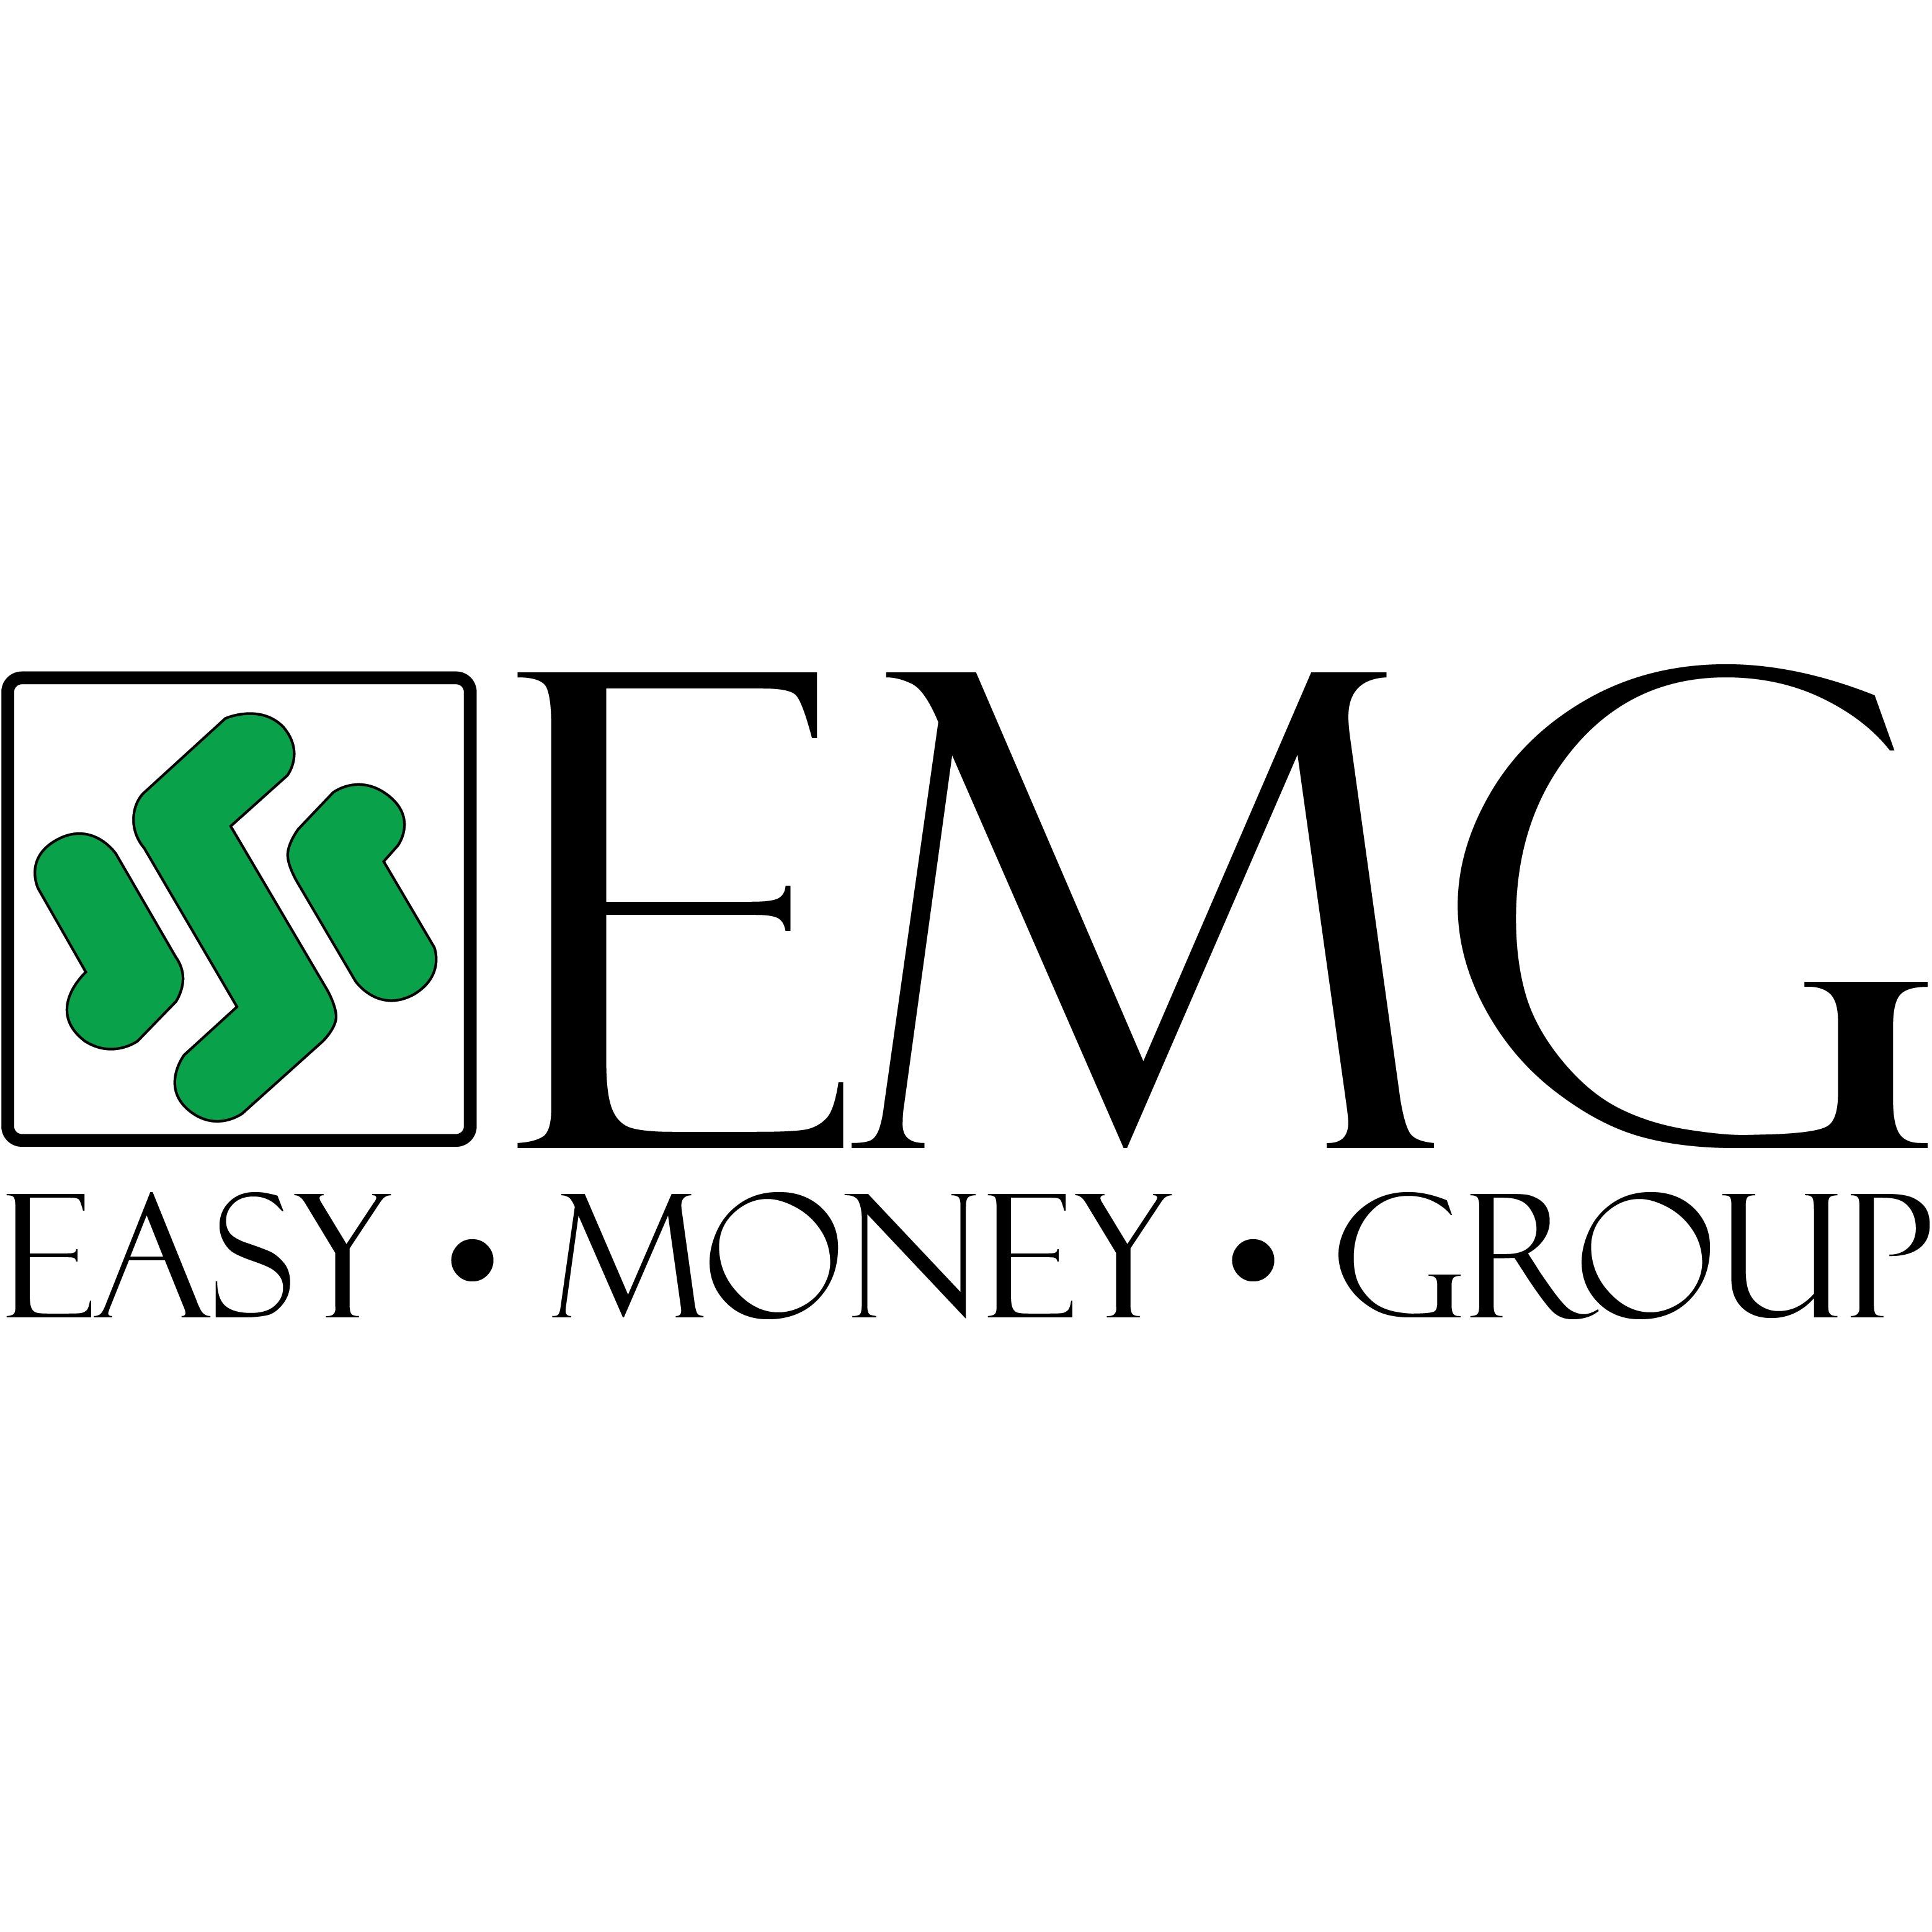 Easy Money EMG Logo